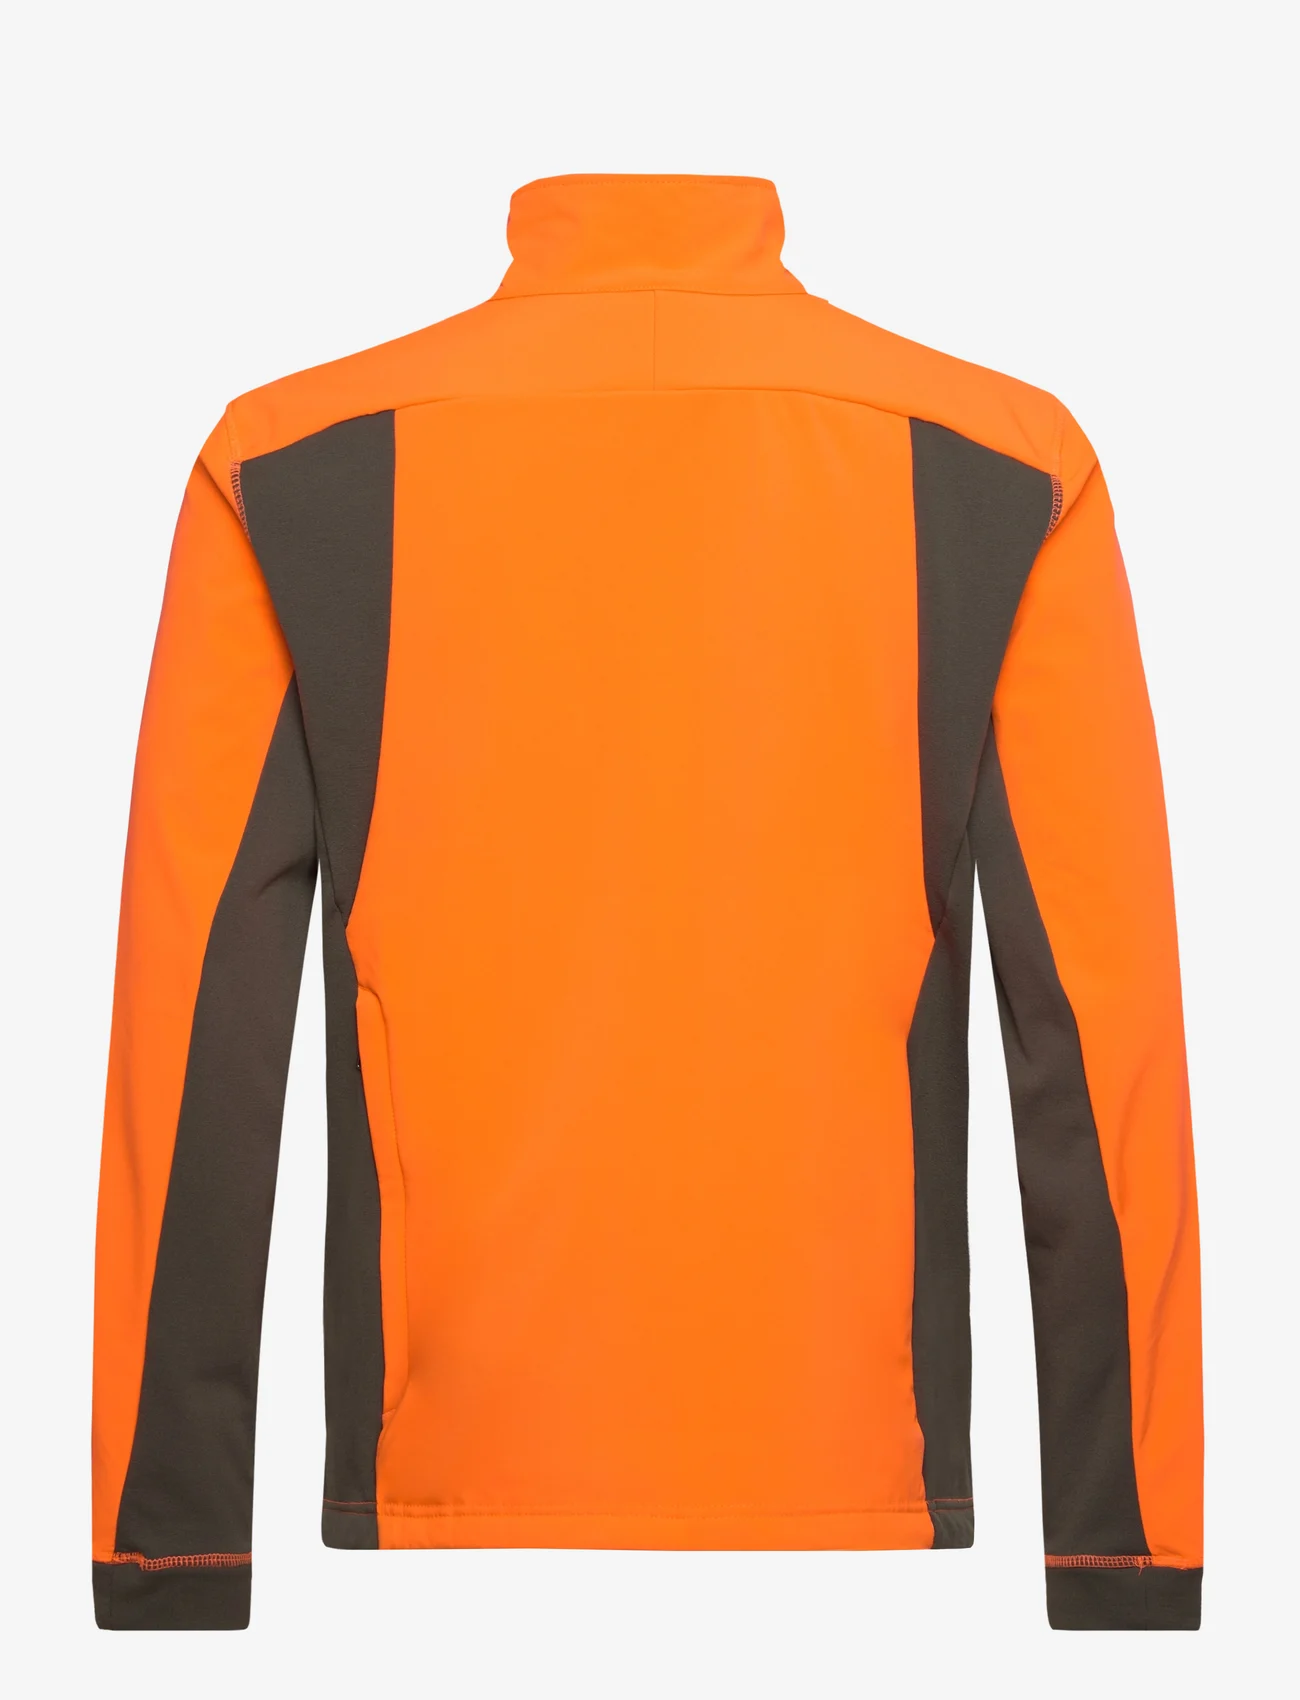 Chevalier - Nimrod Windblocker Jacket Men - outdoor- & regenjacken - high vis orange - 1